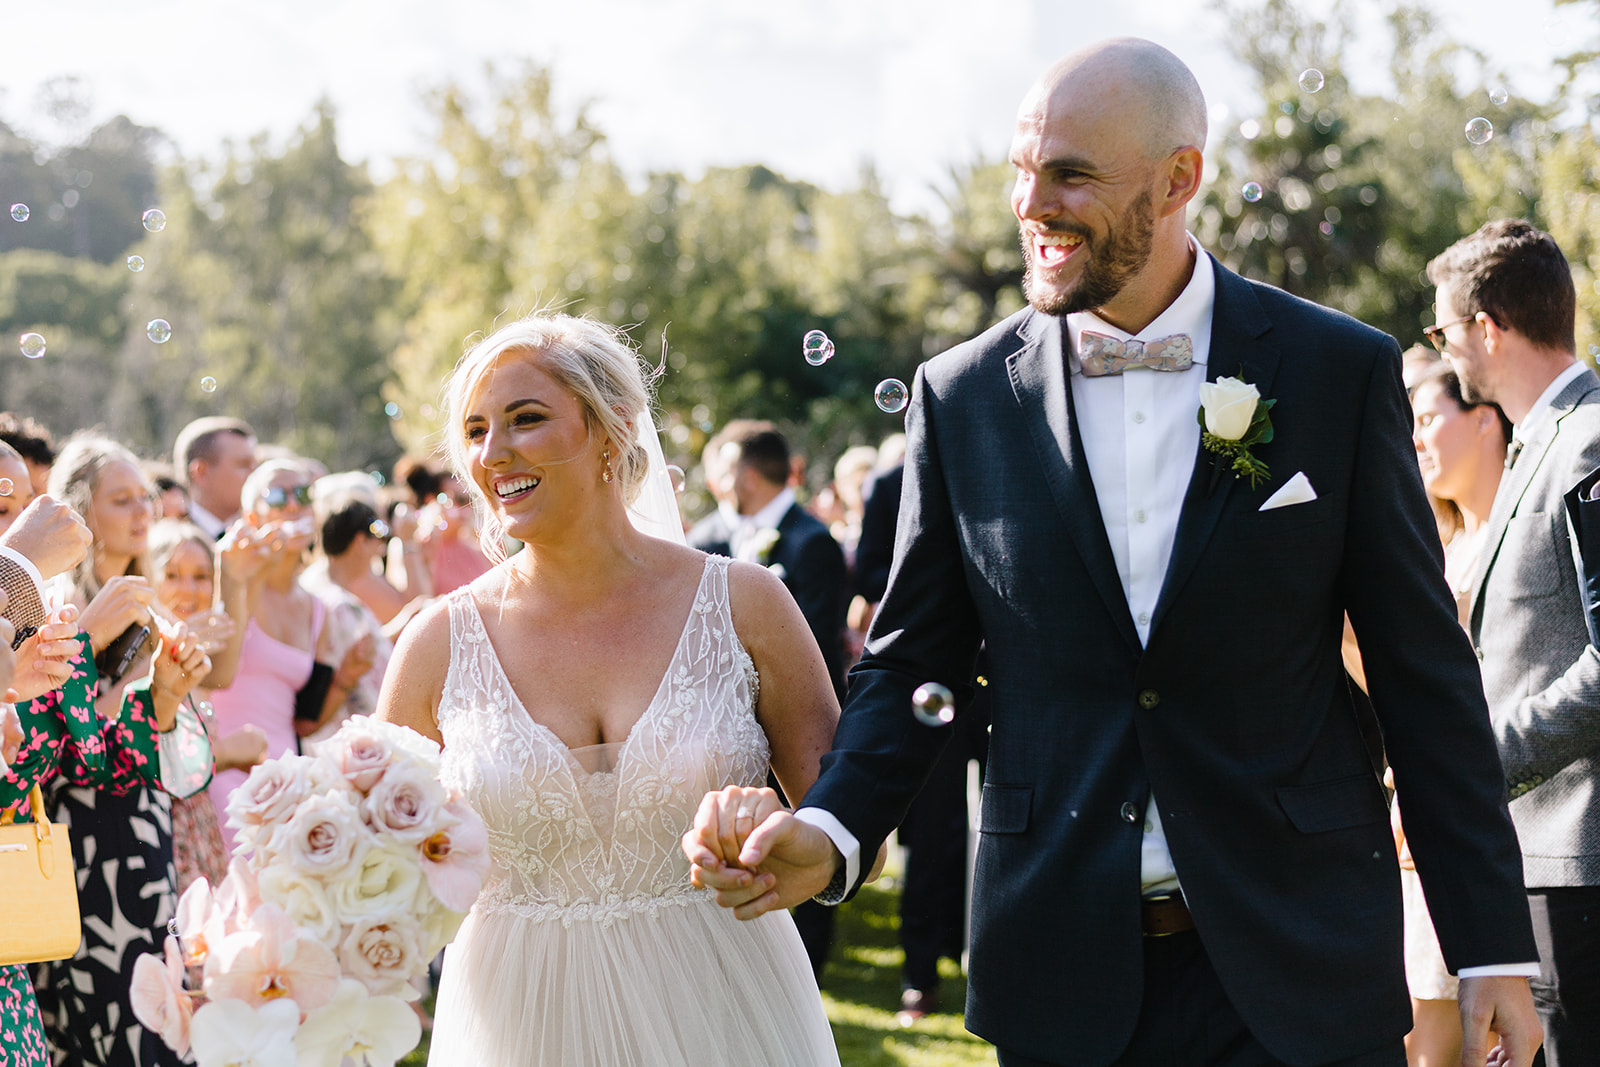 Newlyweds at The Terrace Royal Botanic Gardens Melbourne wedding